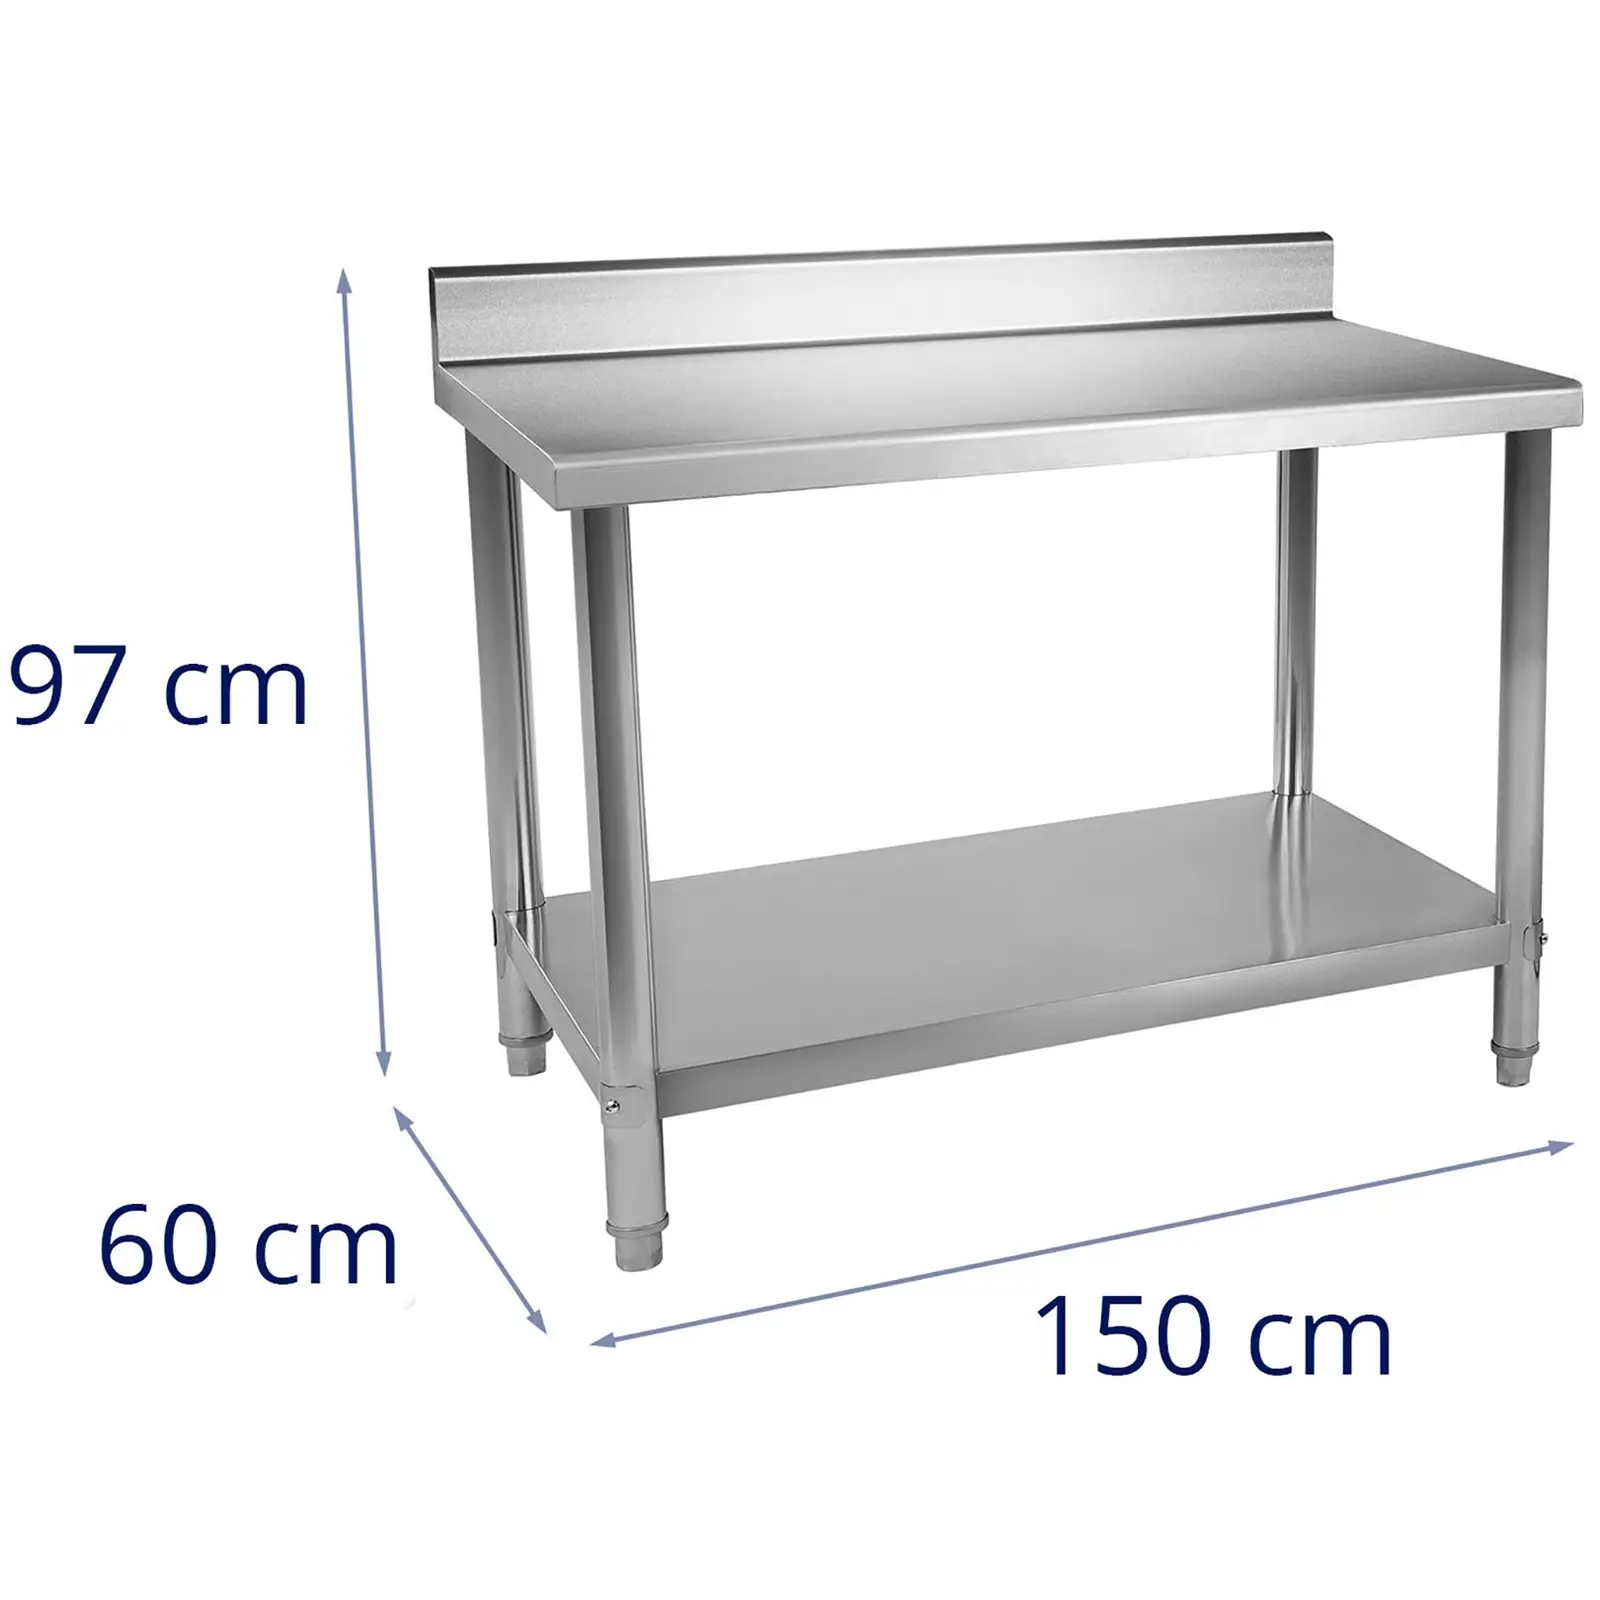 Table de travail en inox - 150 x 60 cm - Avec dosseret - Capacité de charge de 130 kg